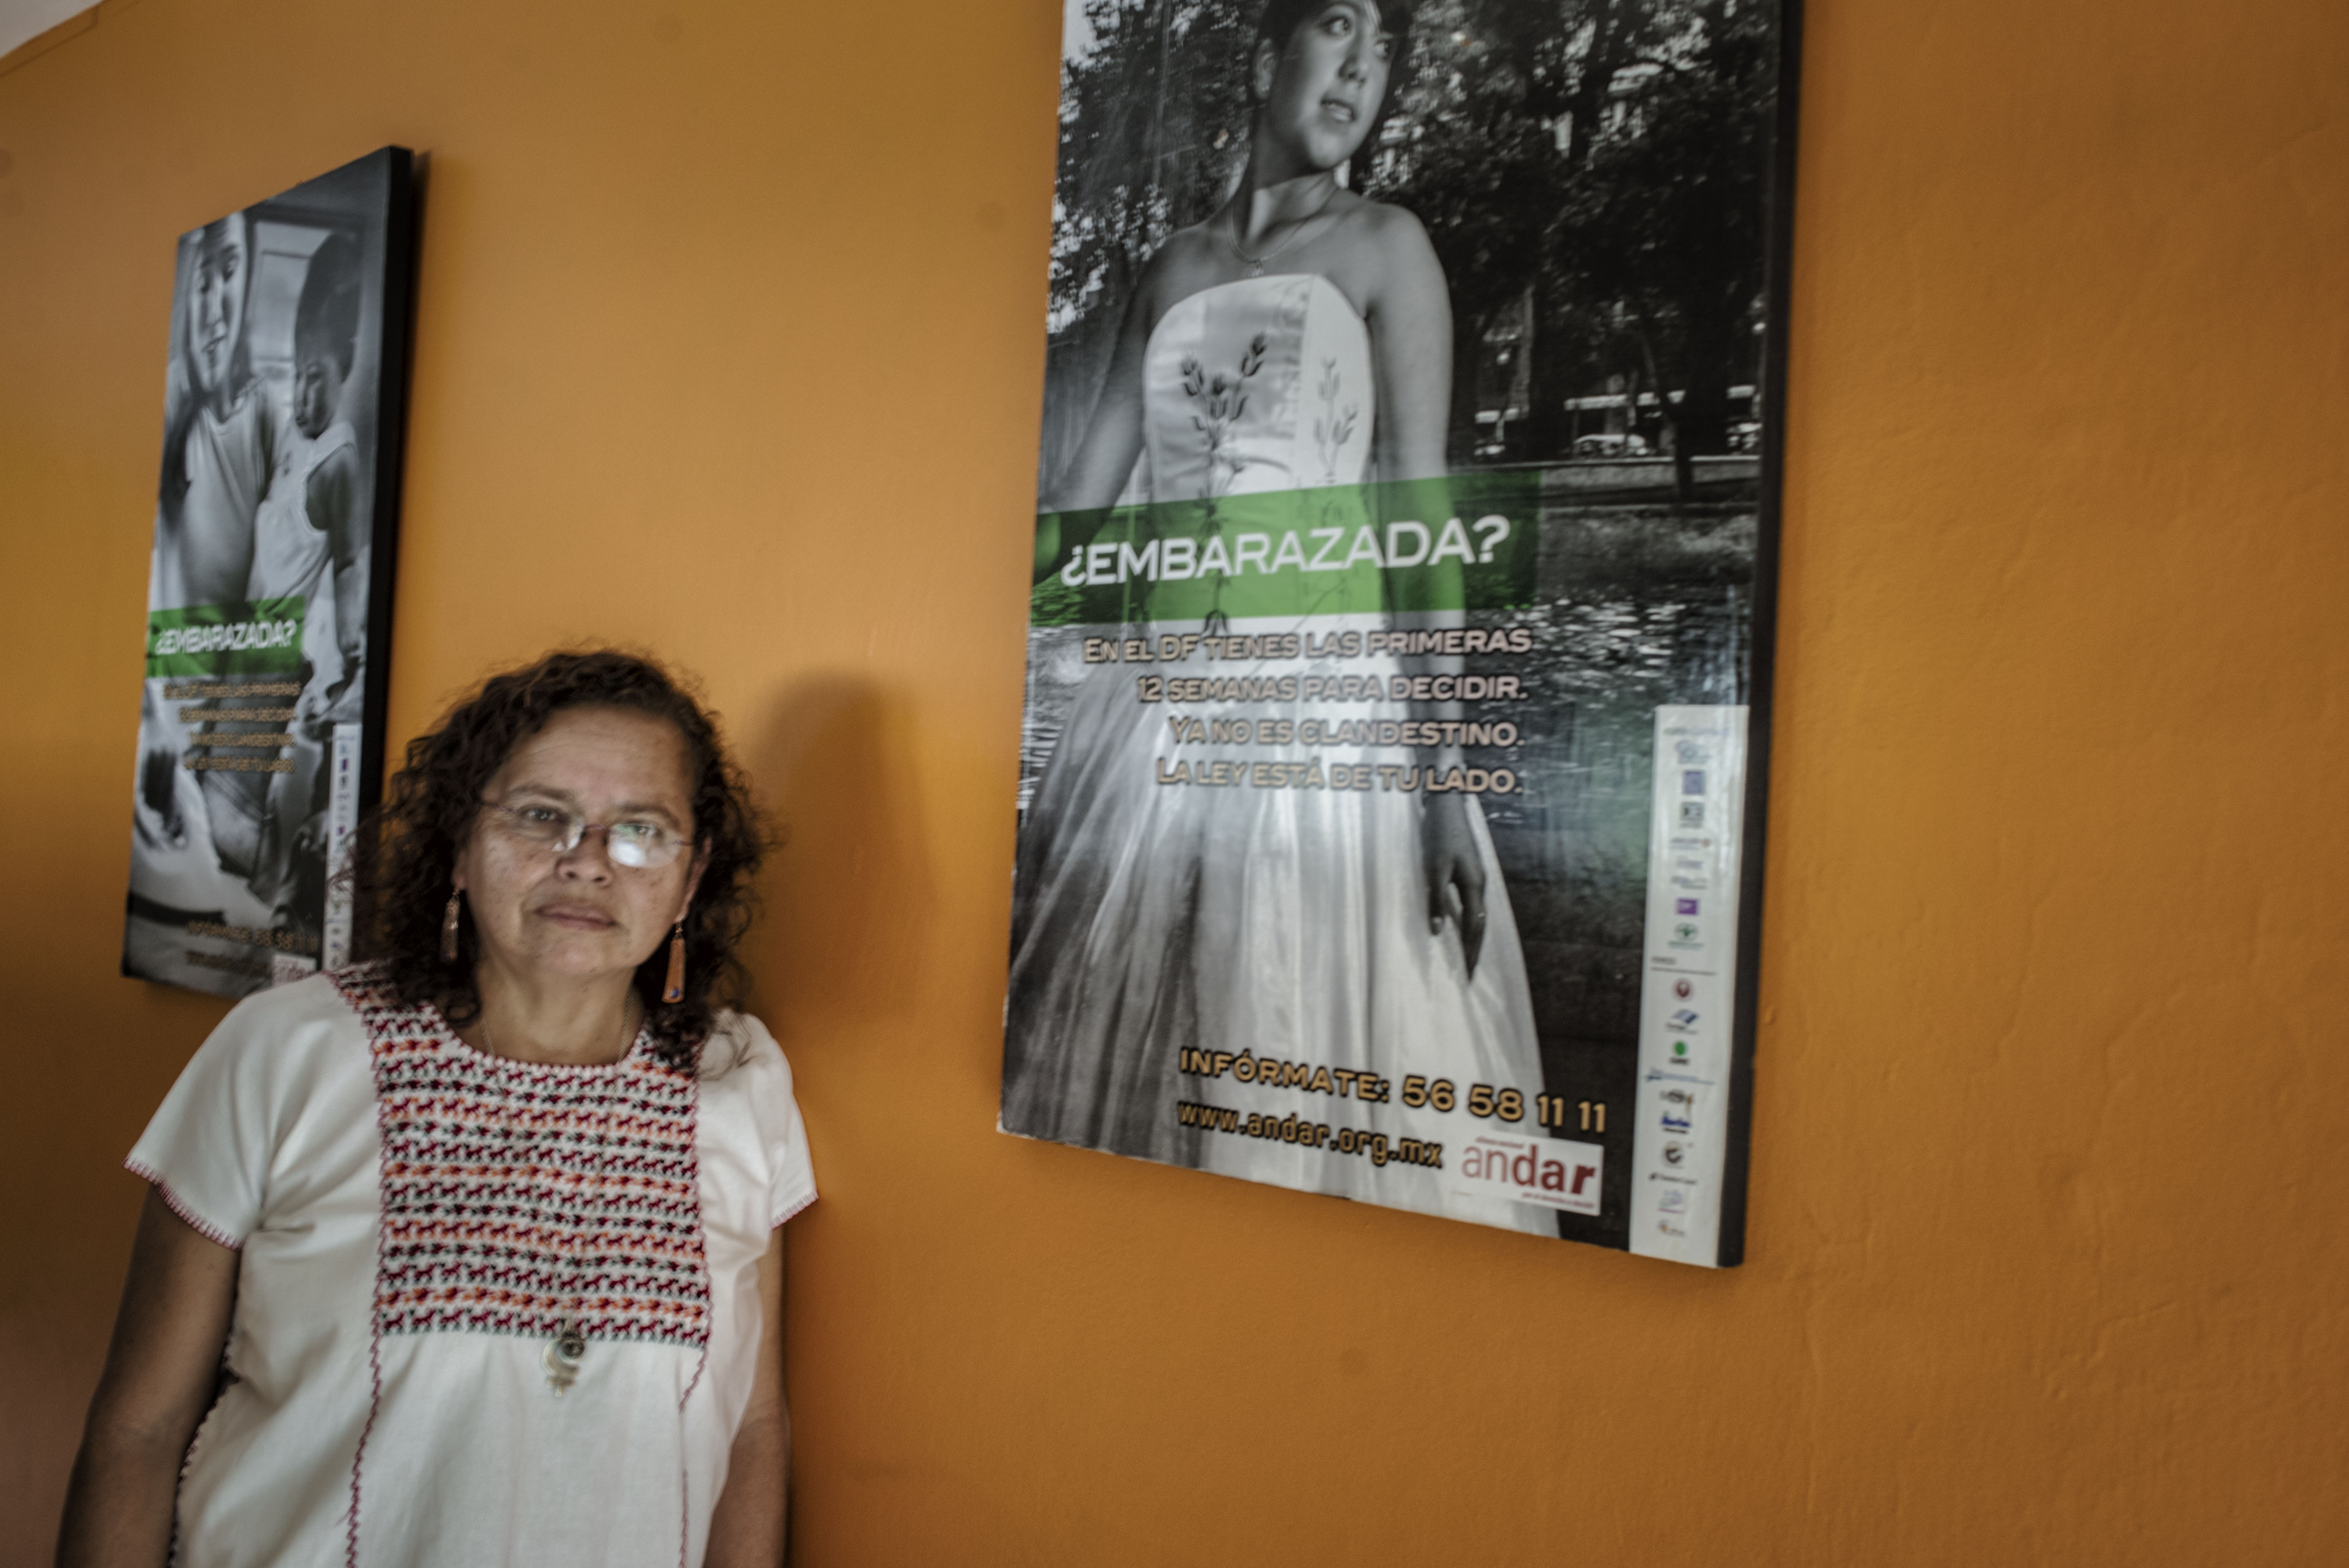 El Salvador, el lugar donde las mujeres no pueden desear su derecho a decidir